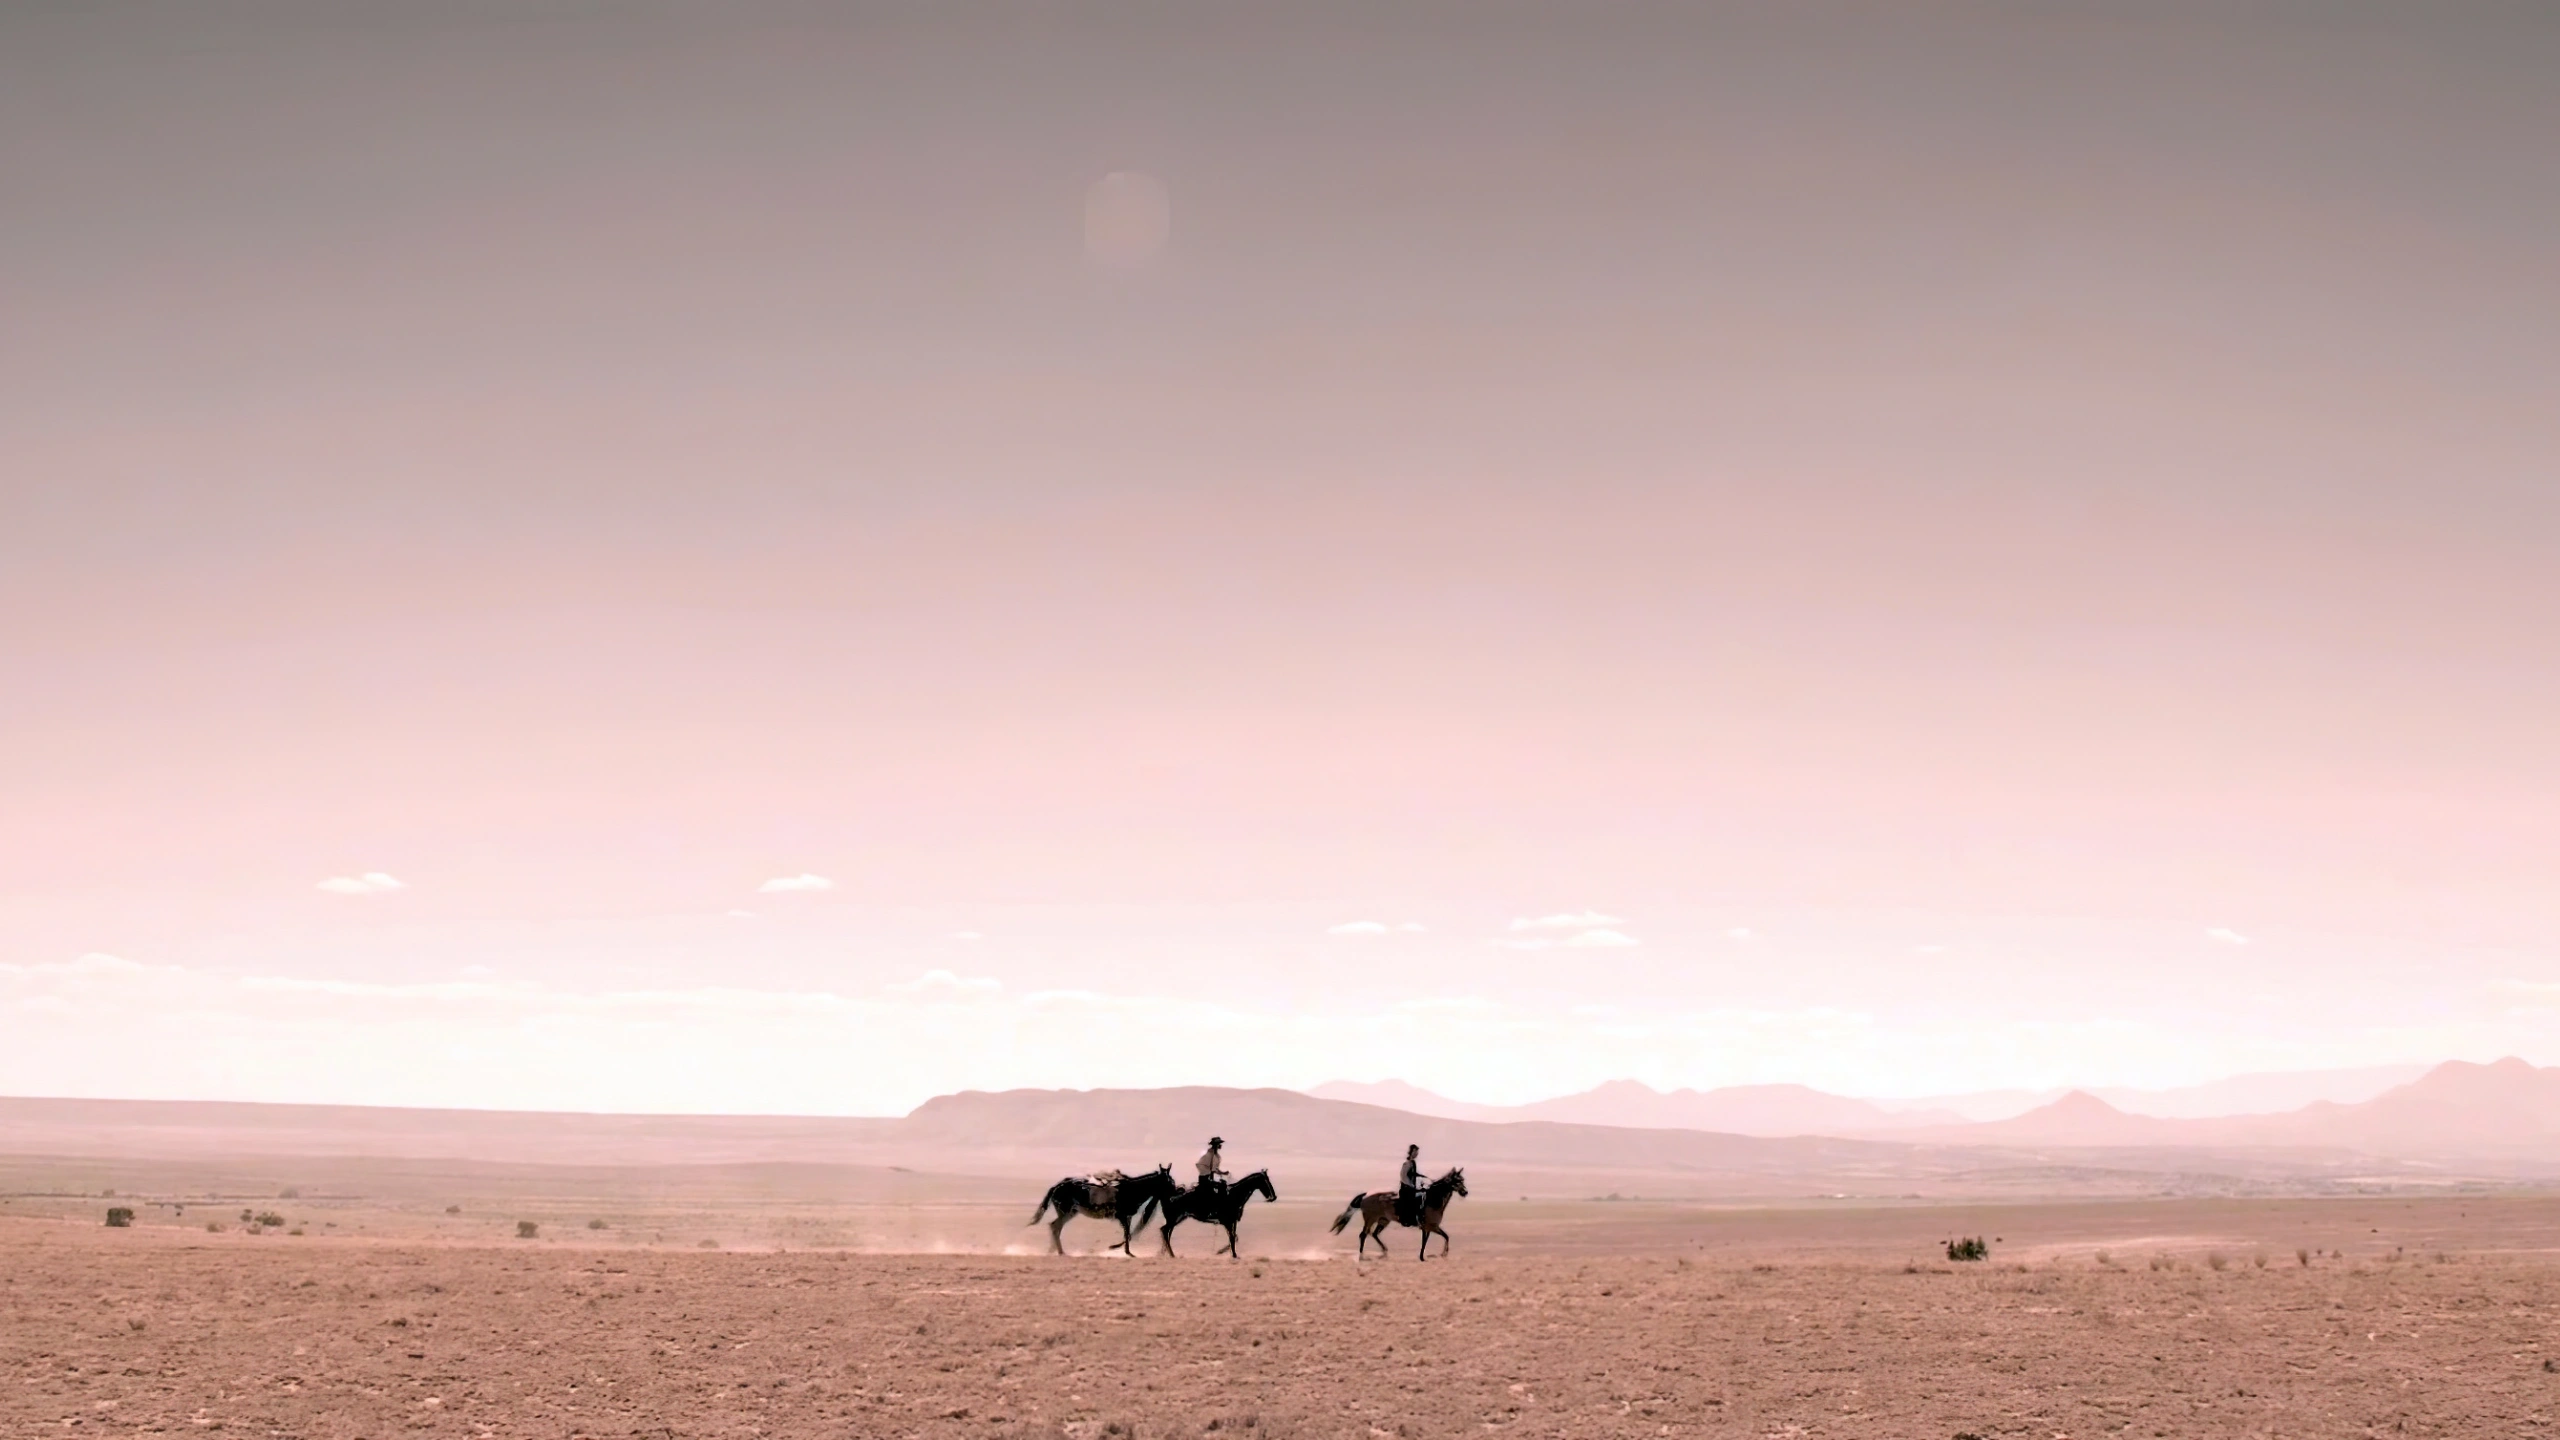 Кадр из фильма Уолтера Хилла «Умереть за доллар», Американская пустыня, Dead for a Dollar